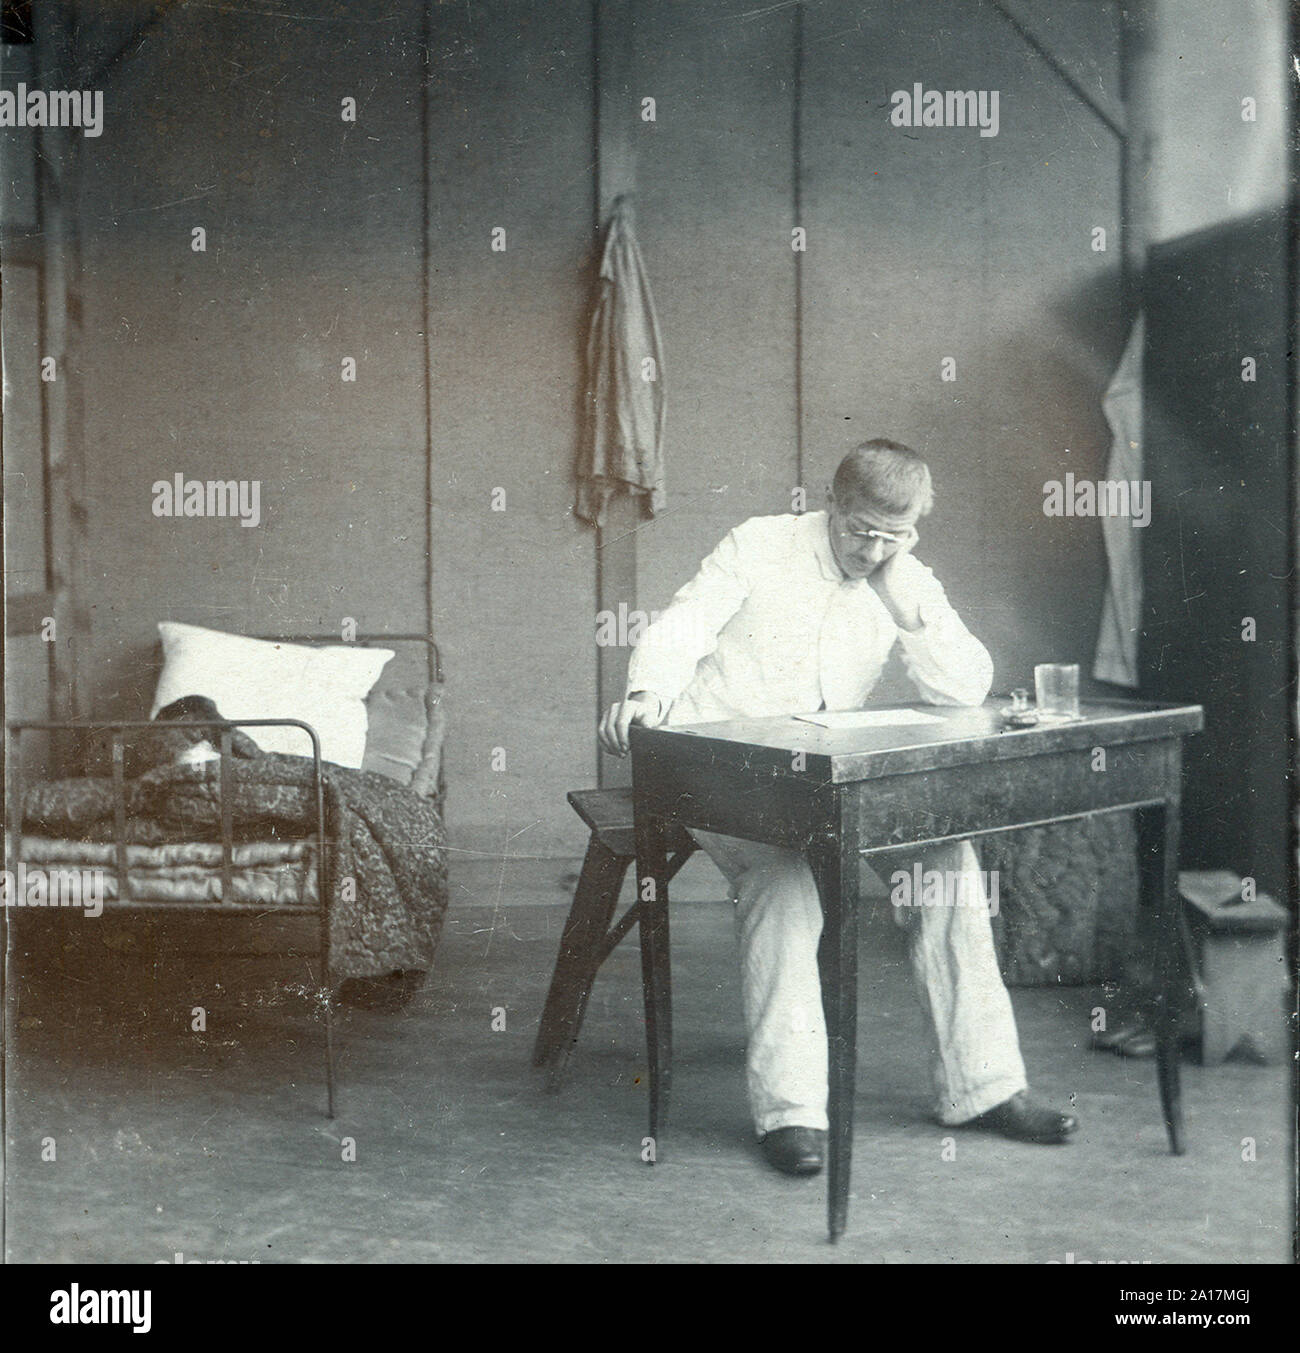 Alfred Dreyfus (1859 - 1935) oficial de artillería francesa de fe y ascendencia judía cuyo juicio y condena en 1894 por cargos de traición se convirtió en uno de los políticos más controvertidos dramas modernos en la historia francesa. Alfred Dreyfus en su habitación en la Isla del Diablo en 1898 Foto de stock